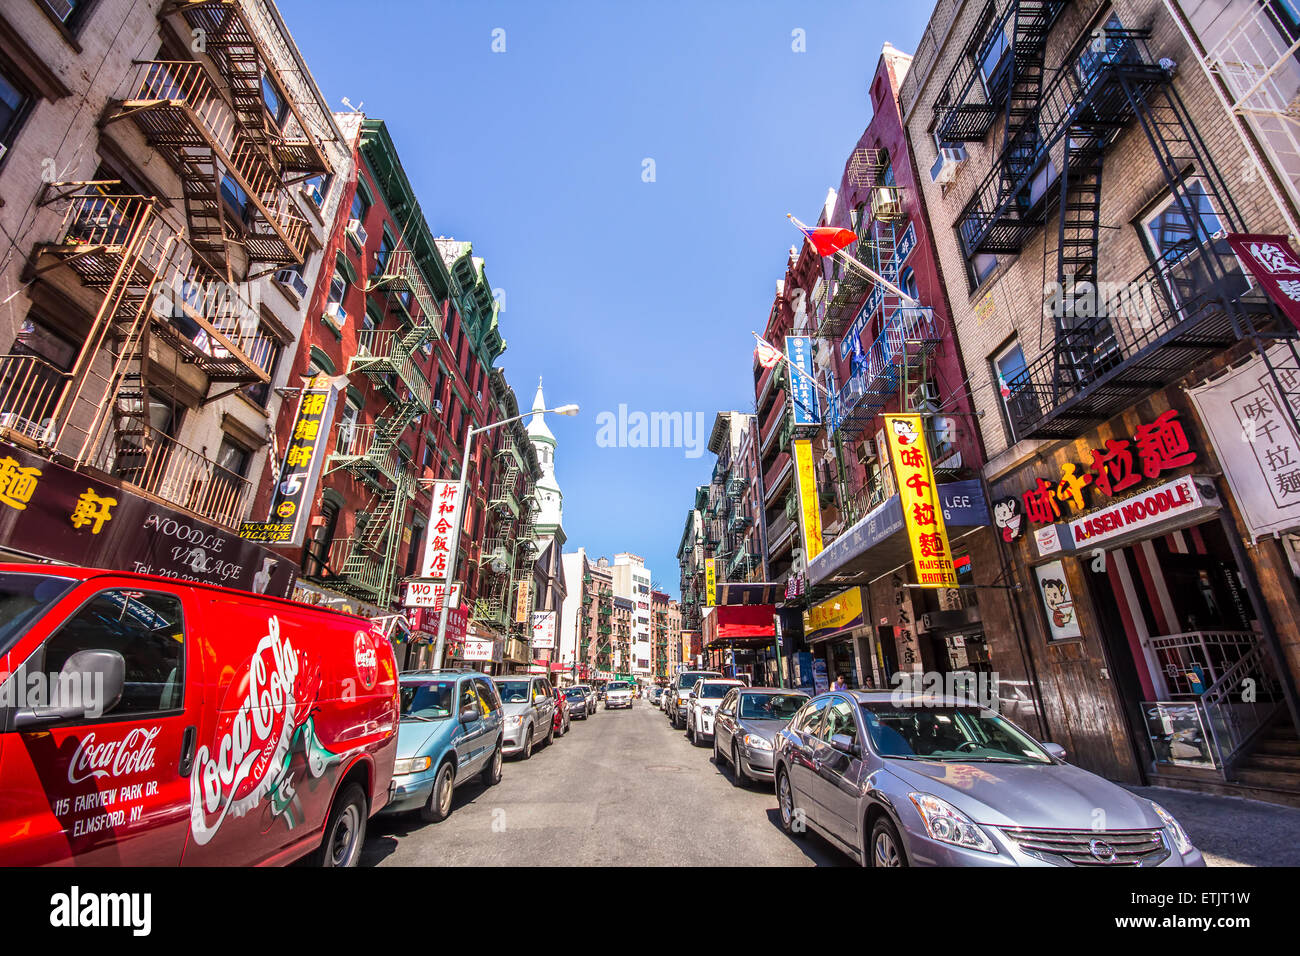 New York City - 29. August 2012: Streetview von Chinatown entlang Mott Street in New York City aus gesehen Stockfoto